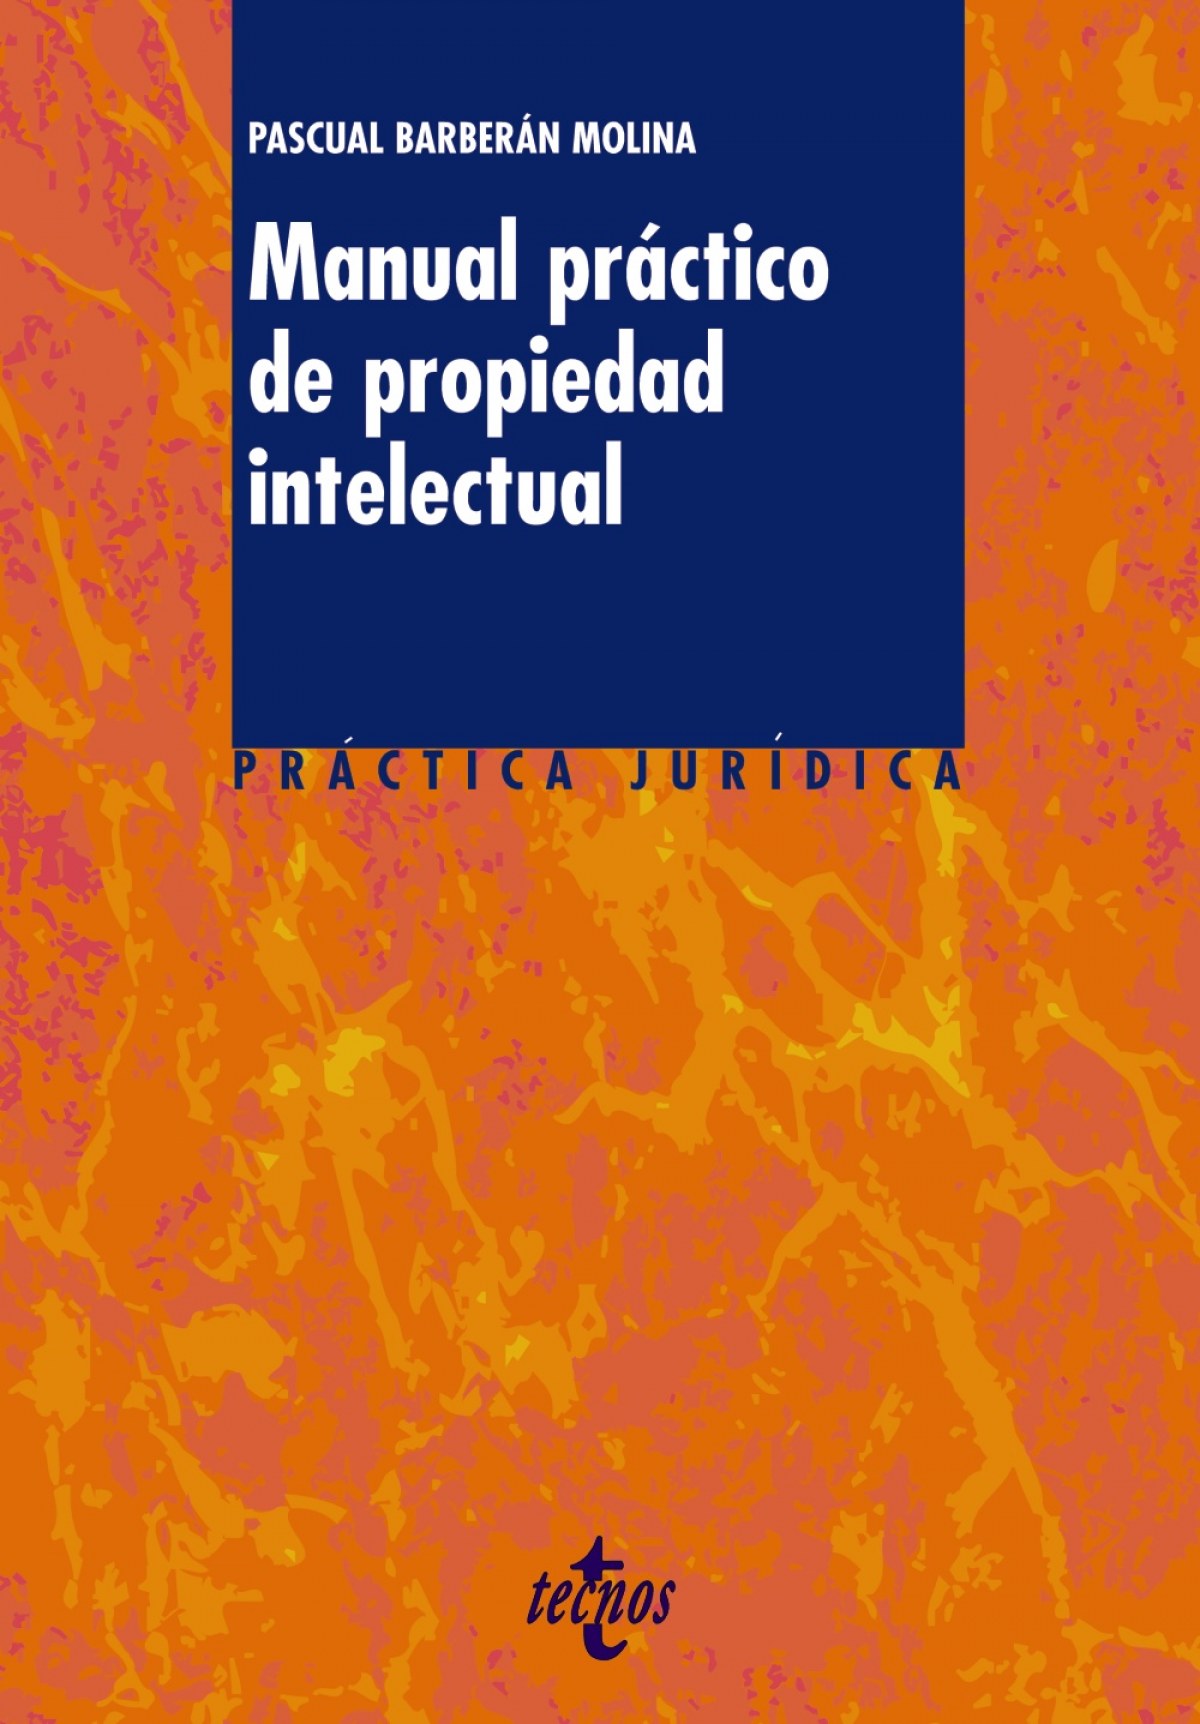 Manual practico de propiedad intelectual - Barberan Molina, Pascual Jorge